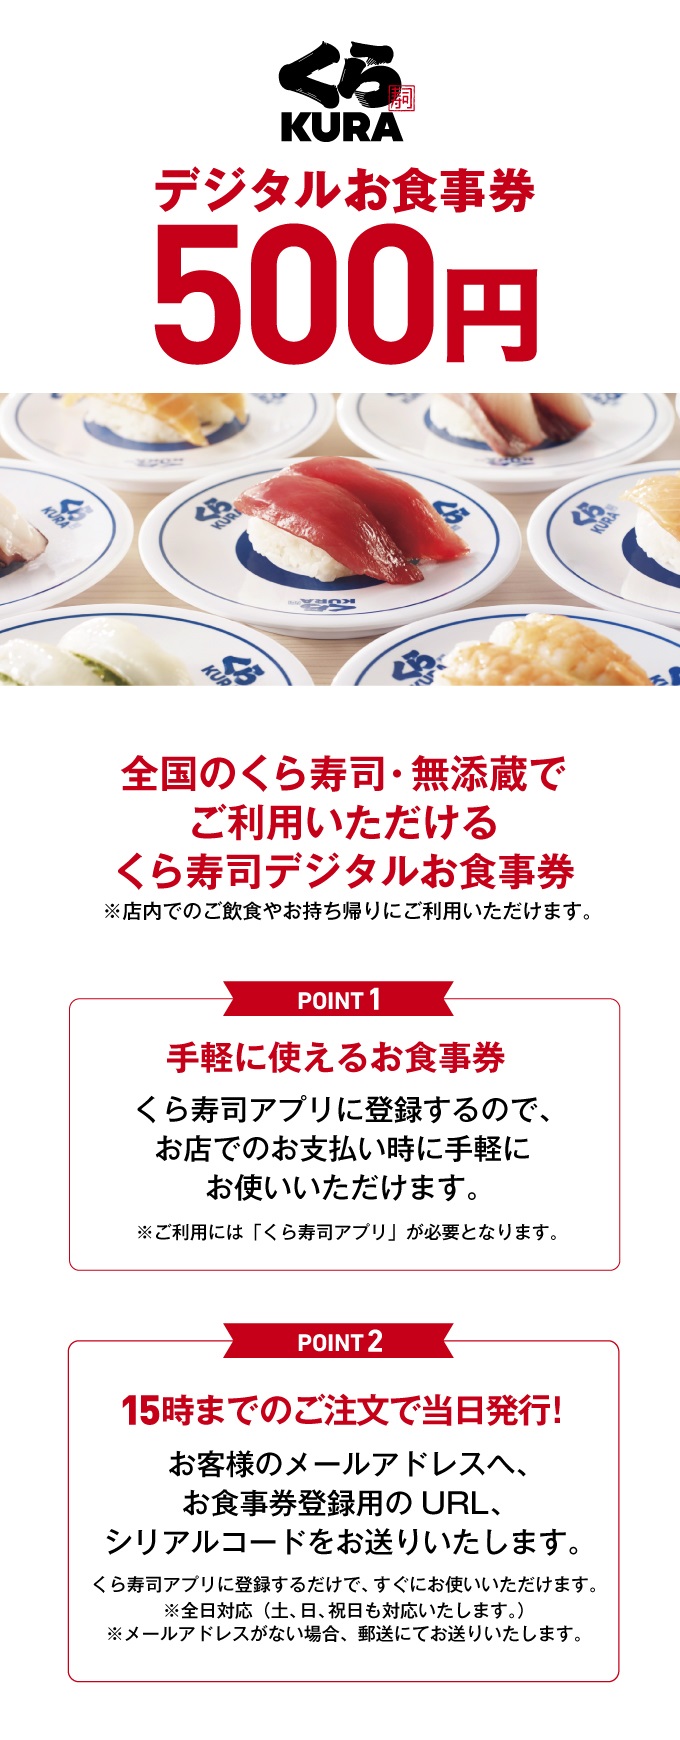 くら寿司 お食事券 20枚 1万円分レストラン・食事券 - bader.org.tr